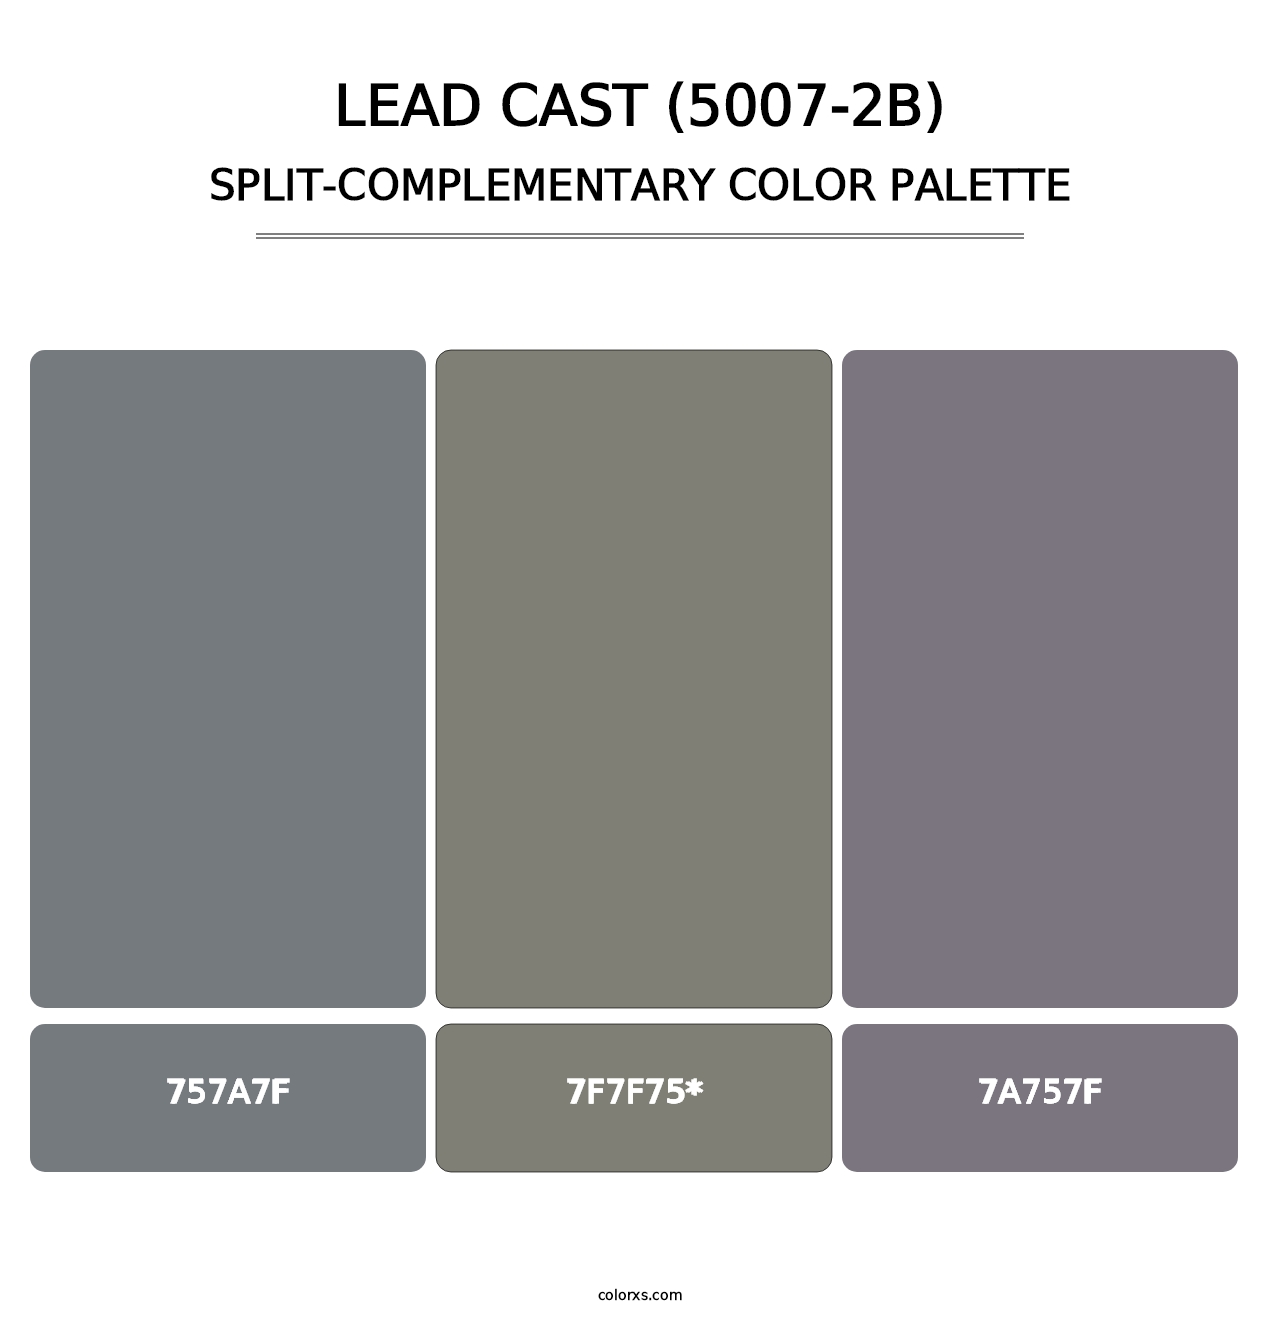 Lead Cast (5007-2B) - Split-Complementary Color Palette